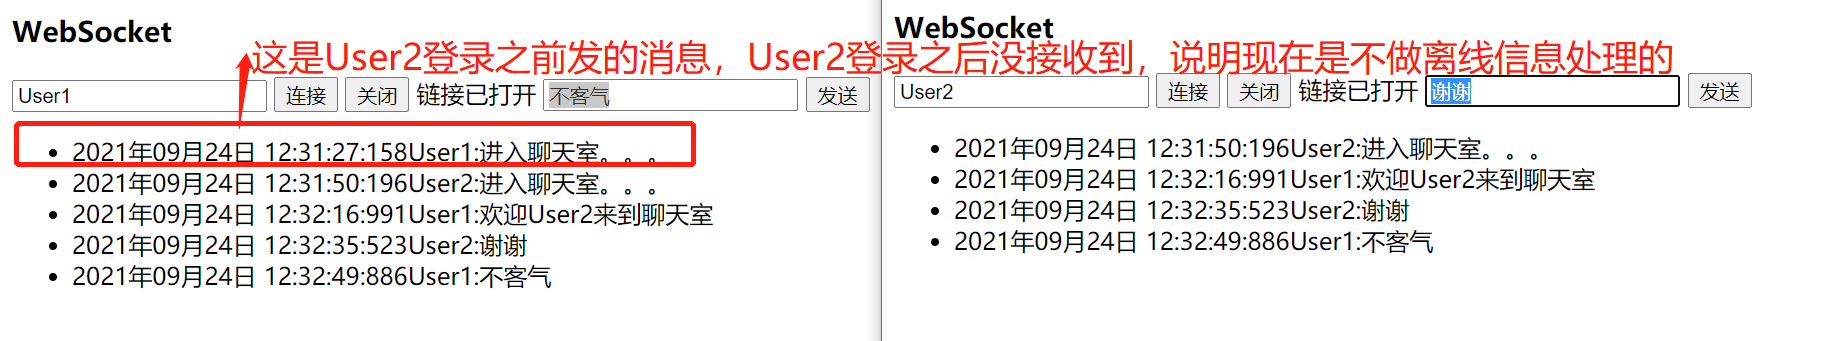 .Net MVC 实现WebSocket